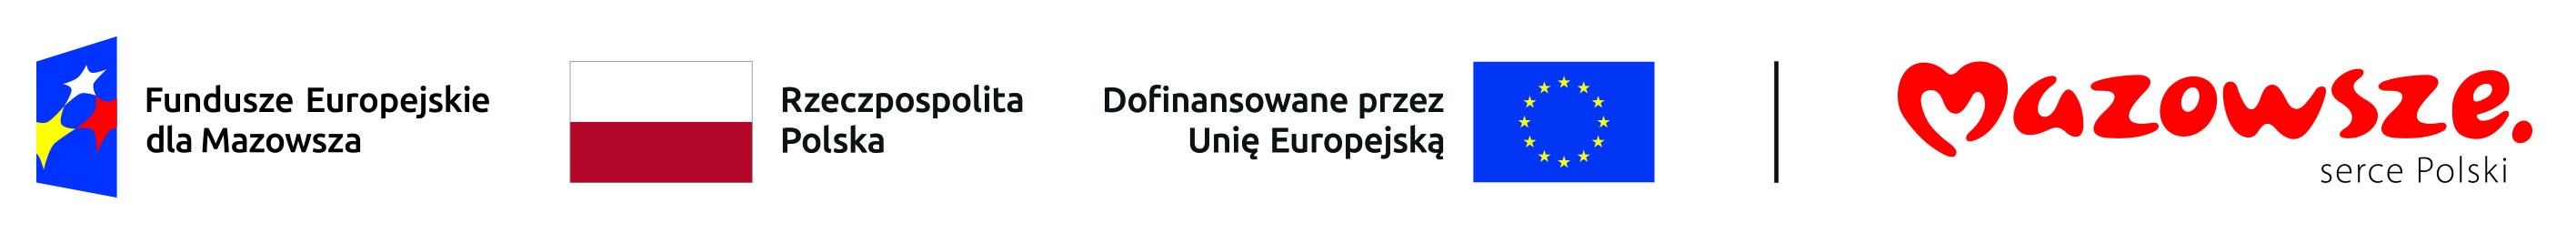 Nagłówek przedstawiający logo Funduszy Europejskich, Flagę Rzeczypospolitej Polskiej, Flagę Unii Europejskiej oraz logo Mazowsze serce Polski